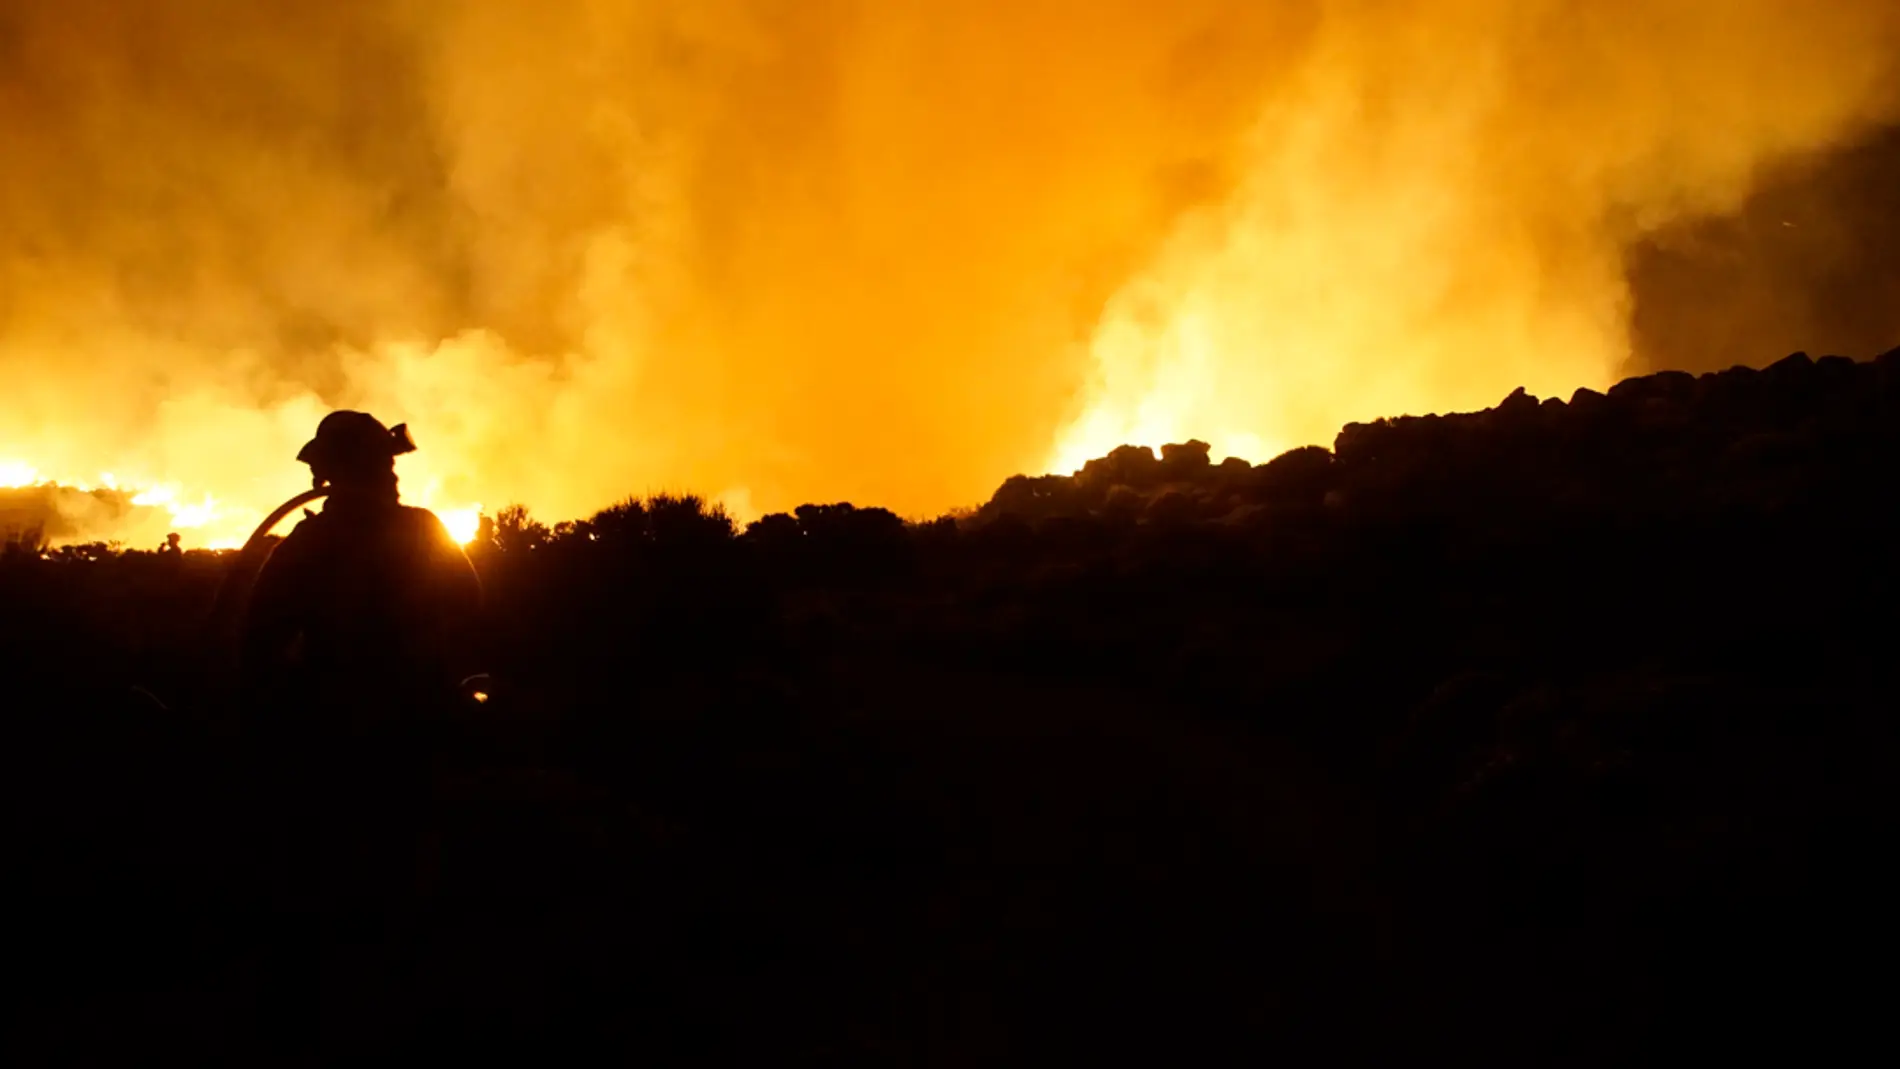 Prevén reactivaciones de algunos focos del incendio de Tenerife debido a las altas temperaturas